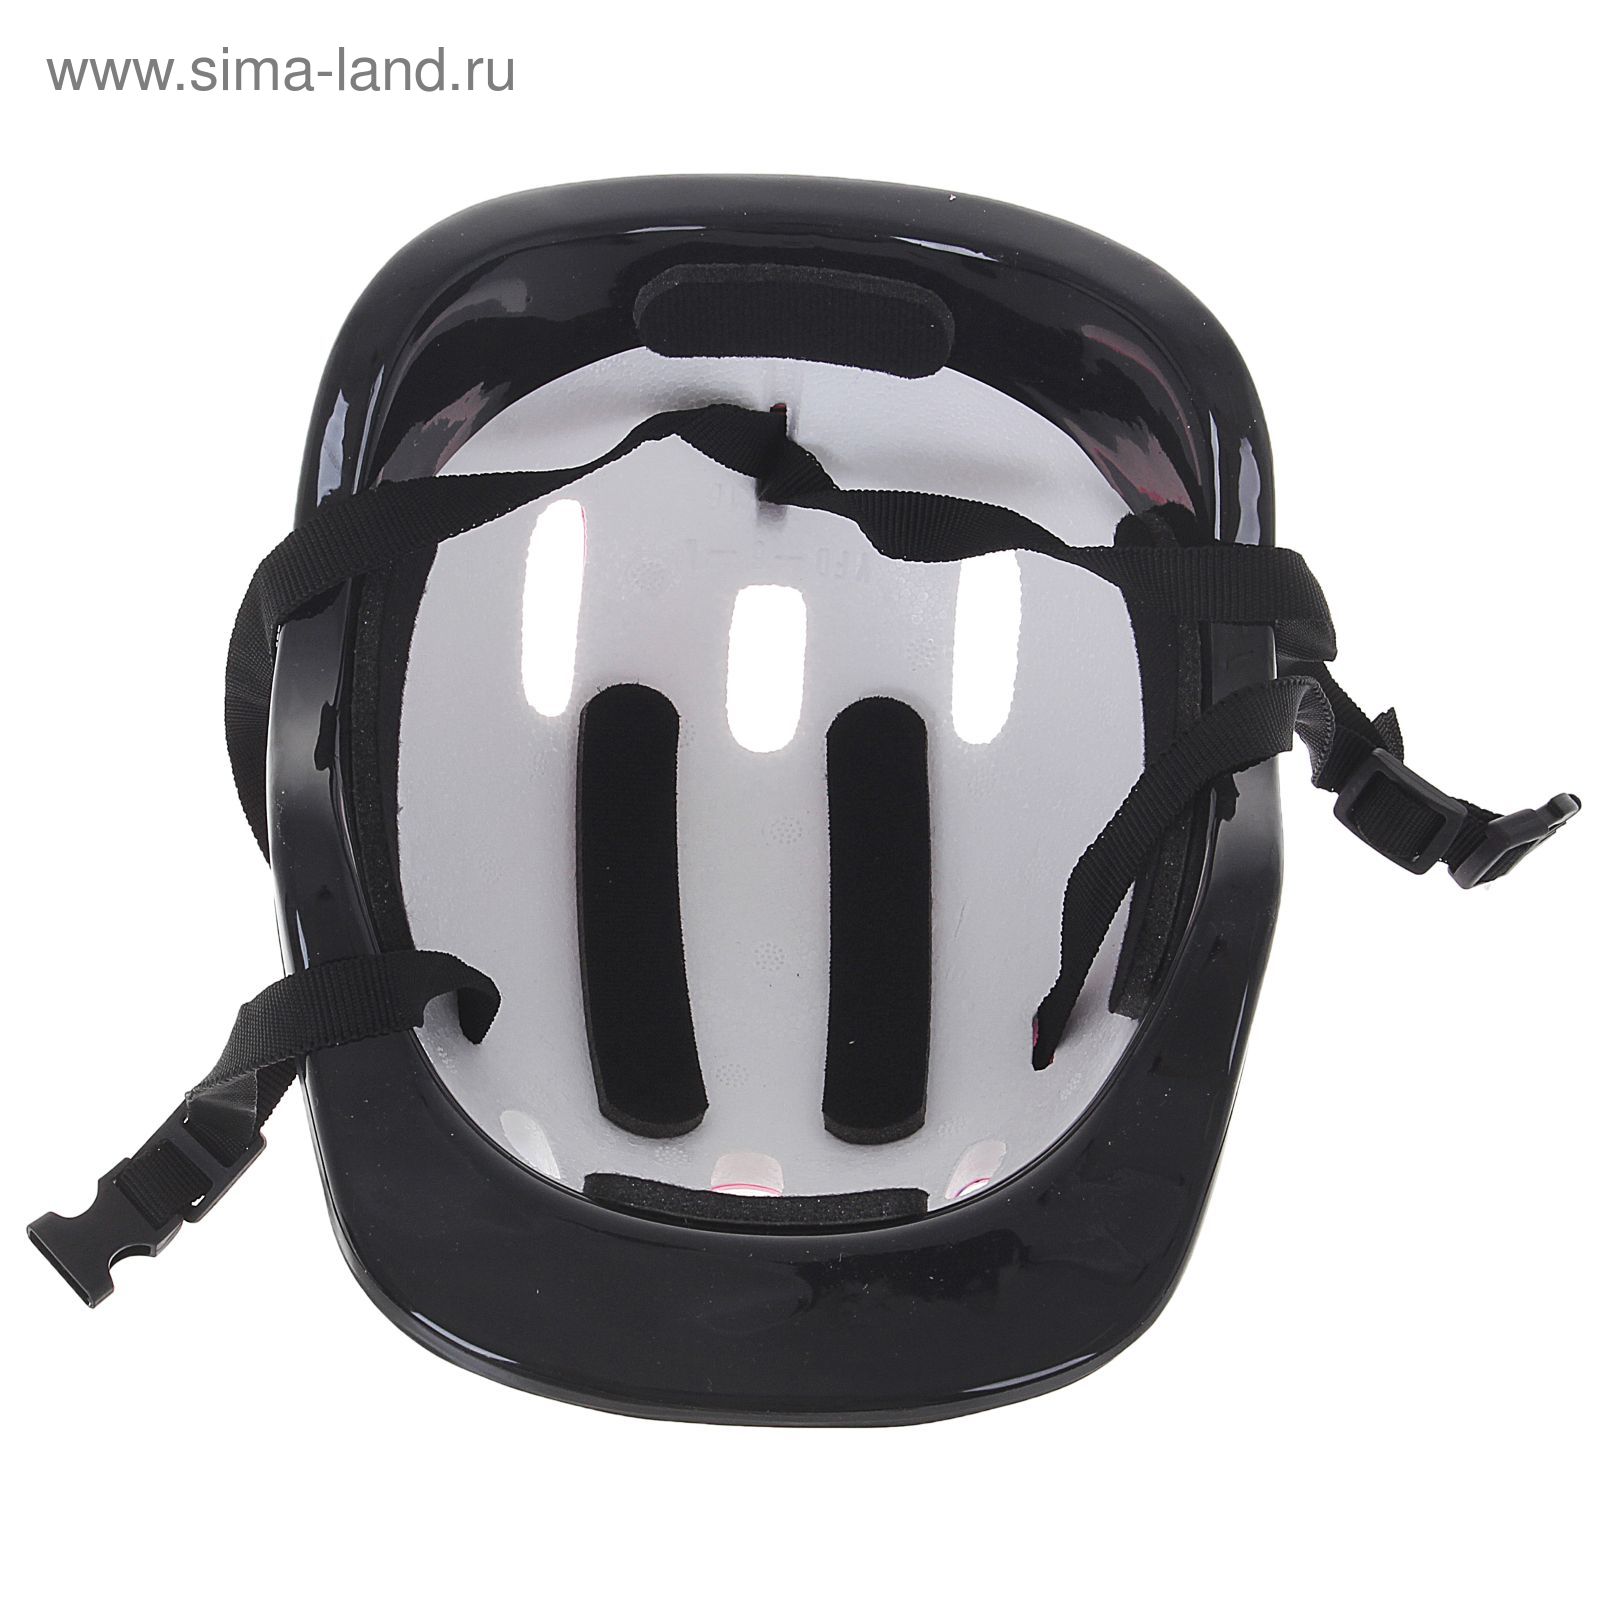 Шлем защитный OT-SH6 детский, р S (52-54 см), цвет: розовый